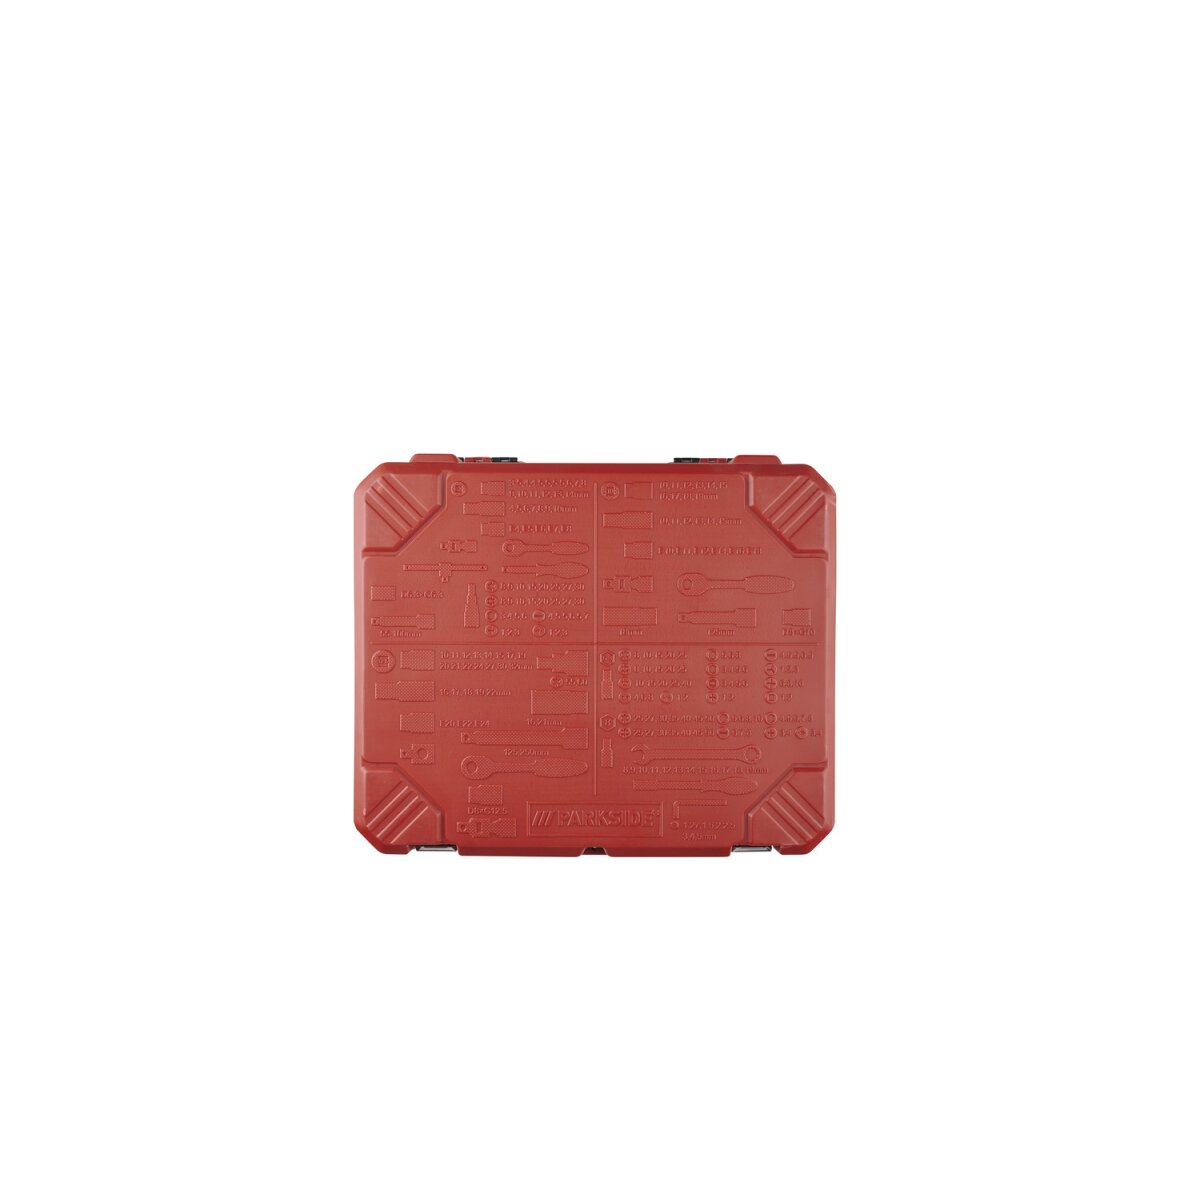 PARKSIDE® Steckschlüsselsatz, 216-teilig, im Set mit Koffer - B-Ware  neuwertig, 79,99 €